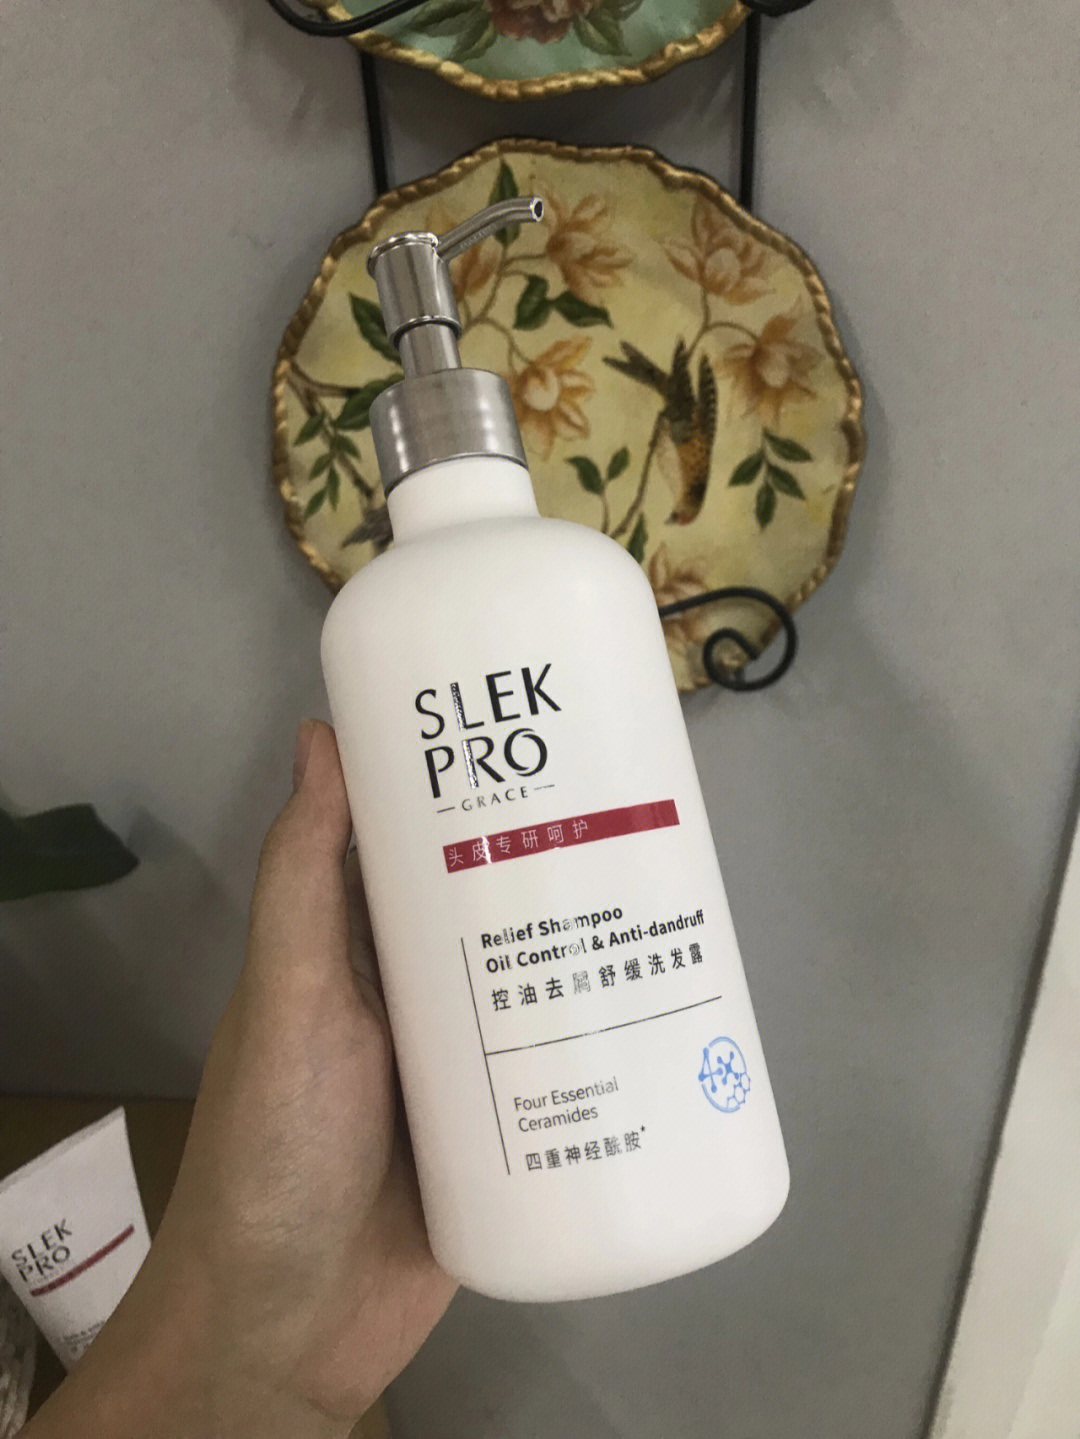 和不刺78激的洗发水是可以很好的修护敏感头皮的舒蕾家新上的slek